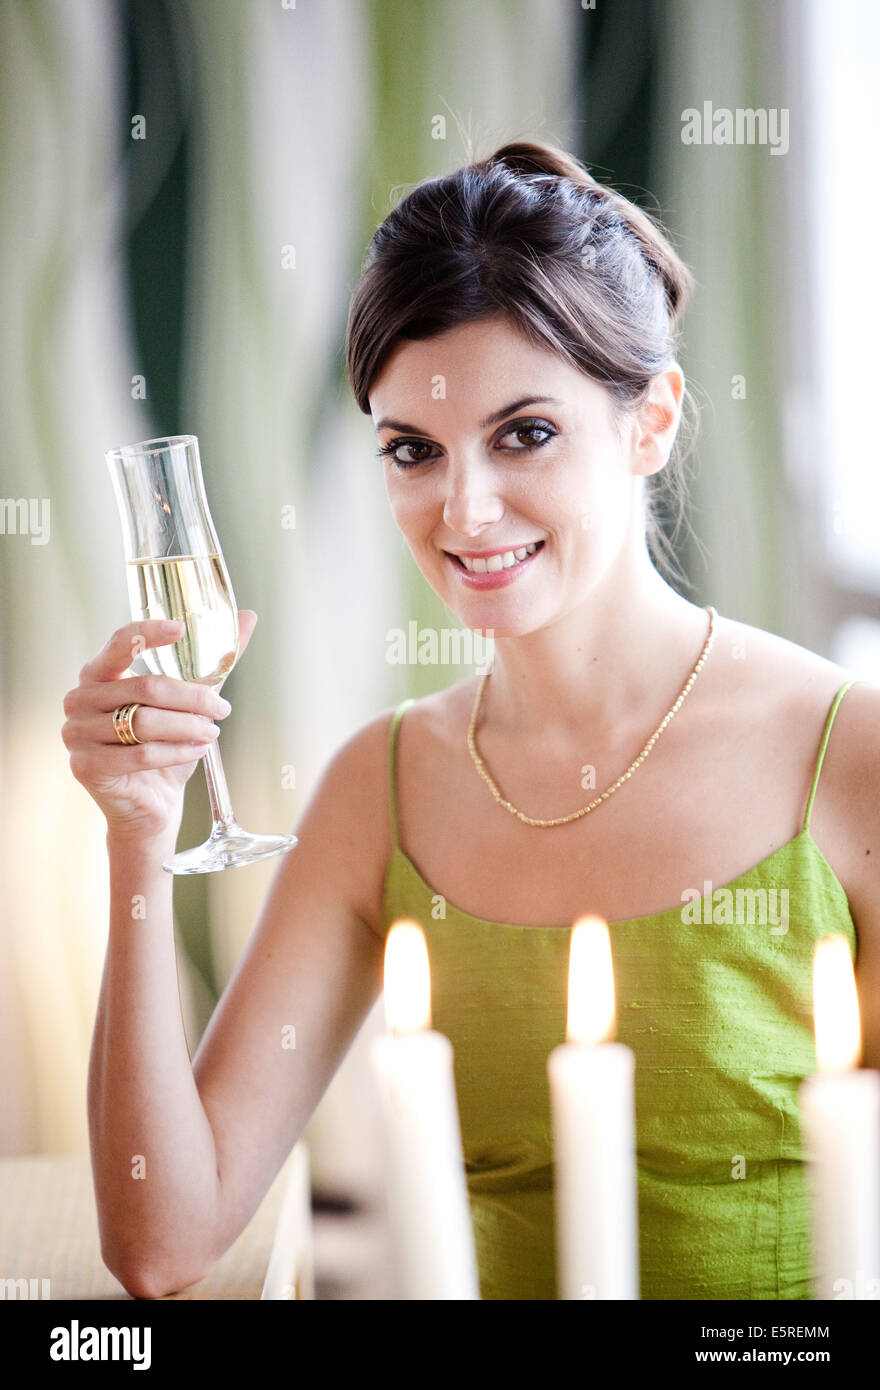 Femme buvant du champagne. Banque D'Images